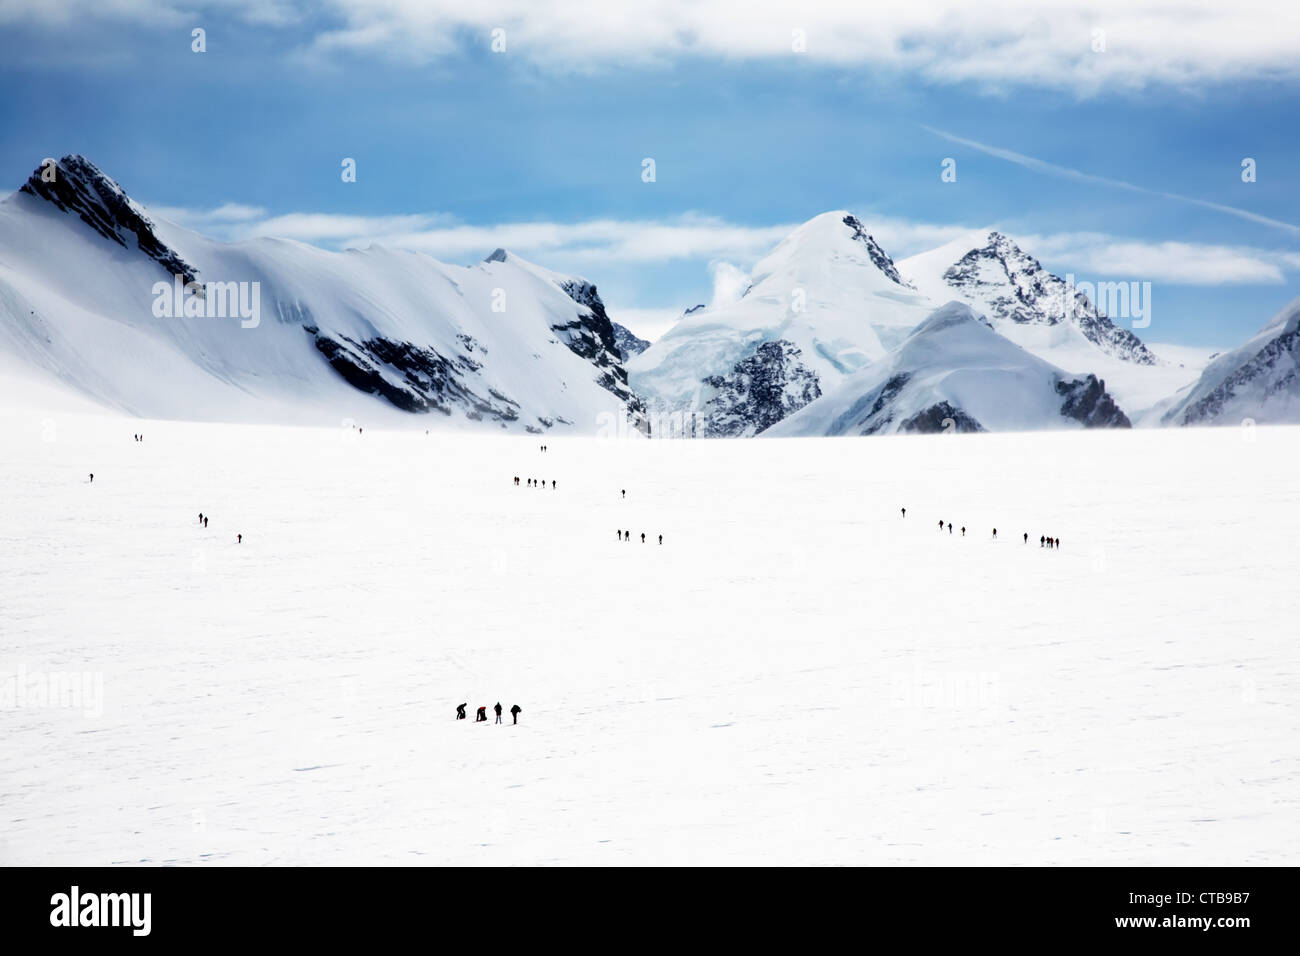 Gruppi alpinisti camminando sul grande ghiacciaio di Verra in picchi di sfondo Castore Polluce MonteRosa Swiss-Italy confine Foto Stock